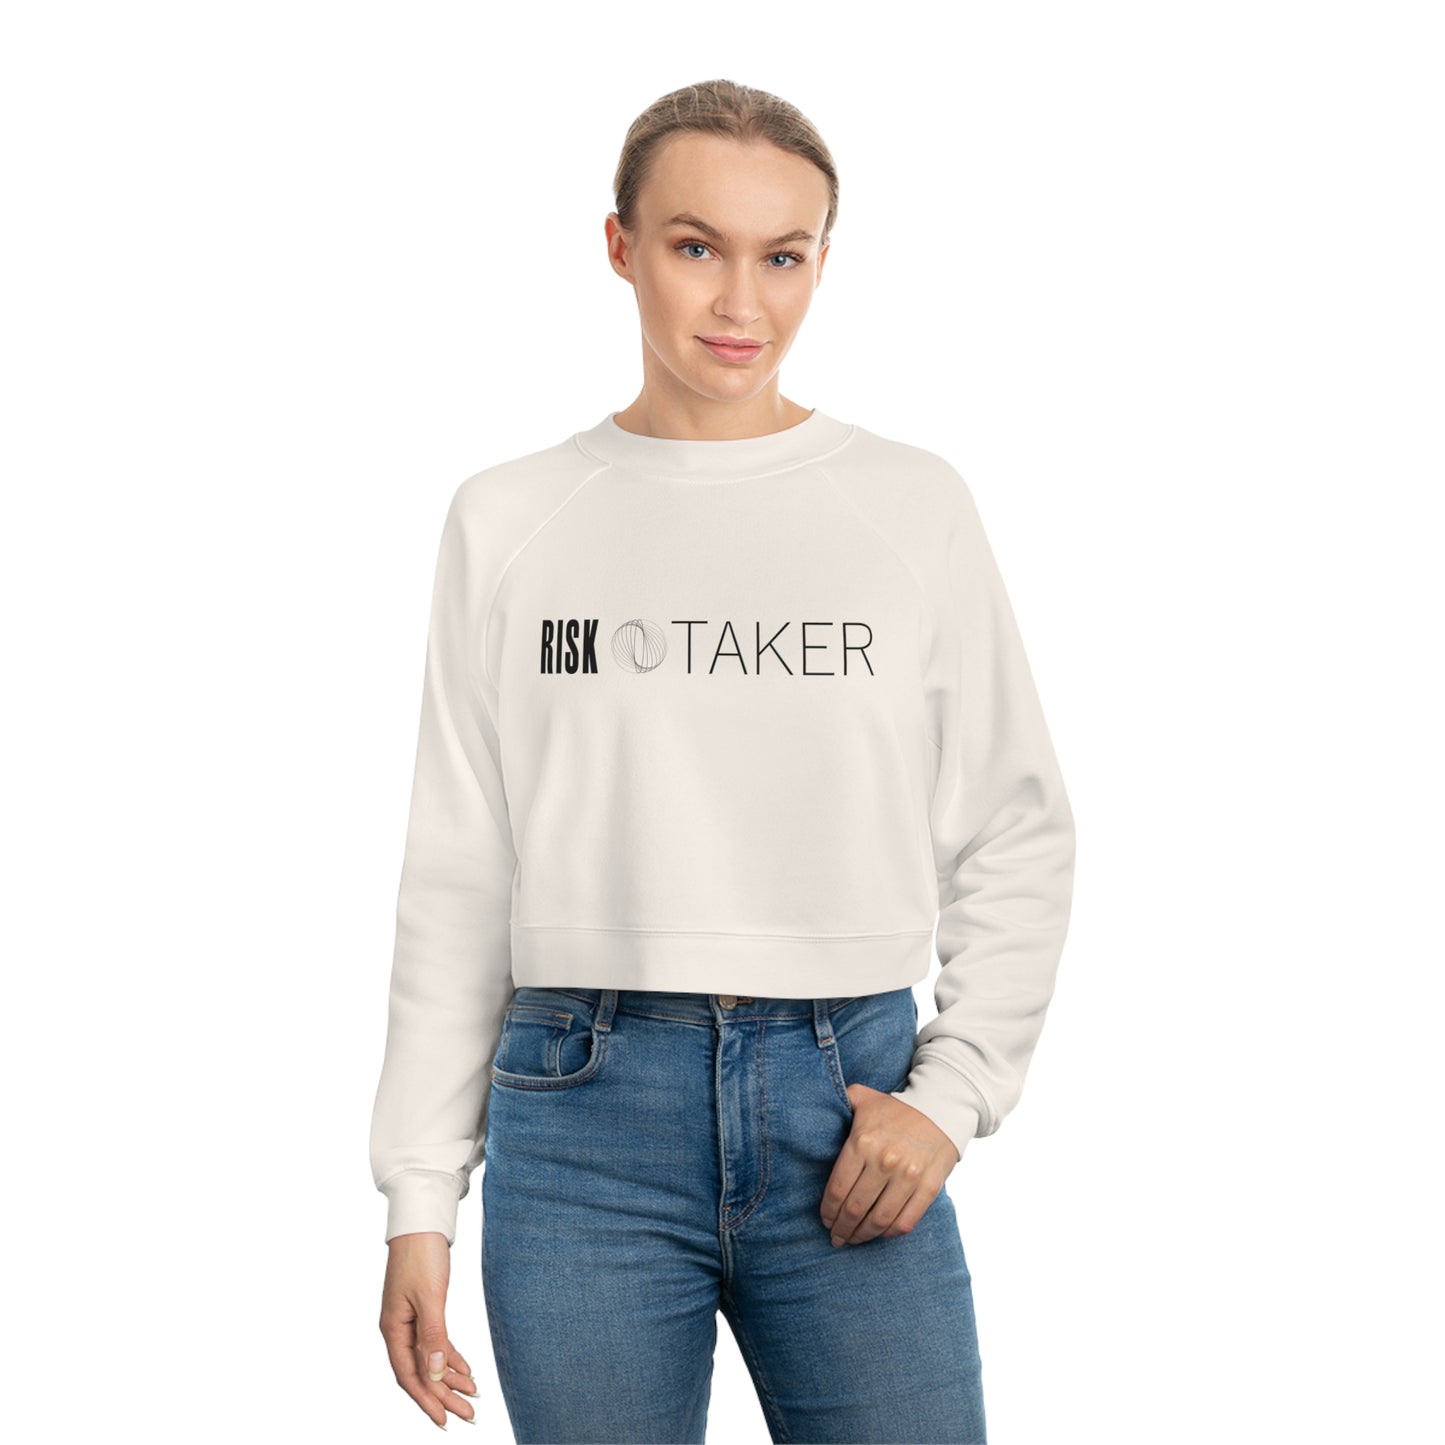 RISK TAKER Women's Cropped Fleece Pullover